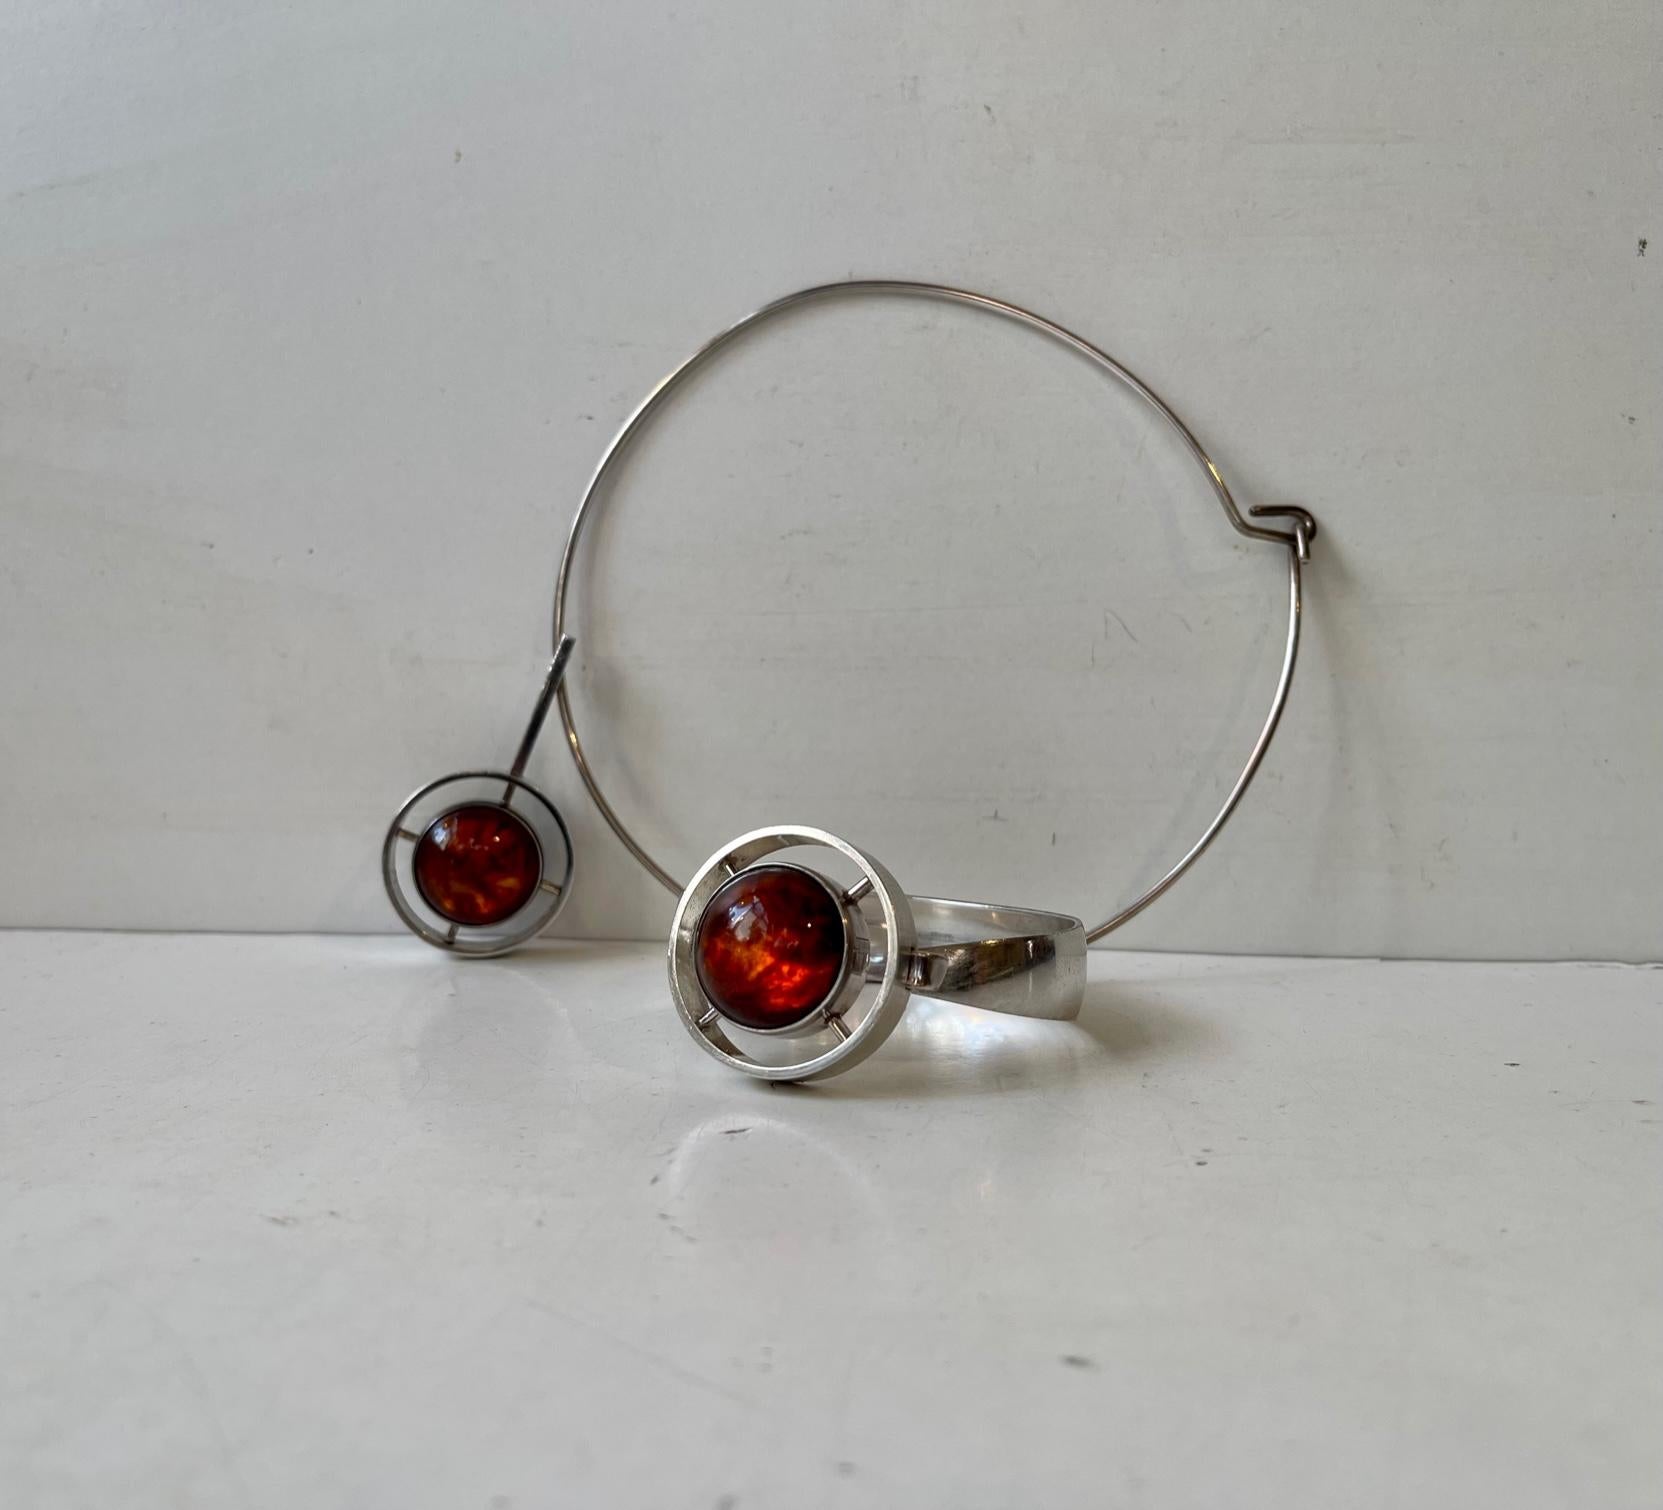 Un élégant collier pendentif moderniste avec son anneau assorti, conçu par l'orfèvre danois Niels Erik From vers 1960-70. L'anneau de cou original est constitué d'une barre en argent sterling à un seul coude. Le collier et le bracelet présentent les